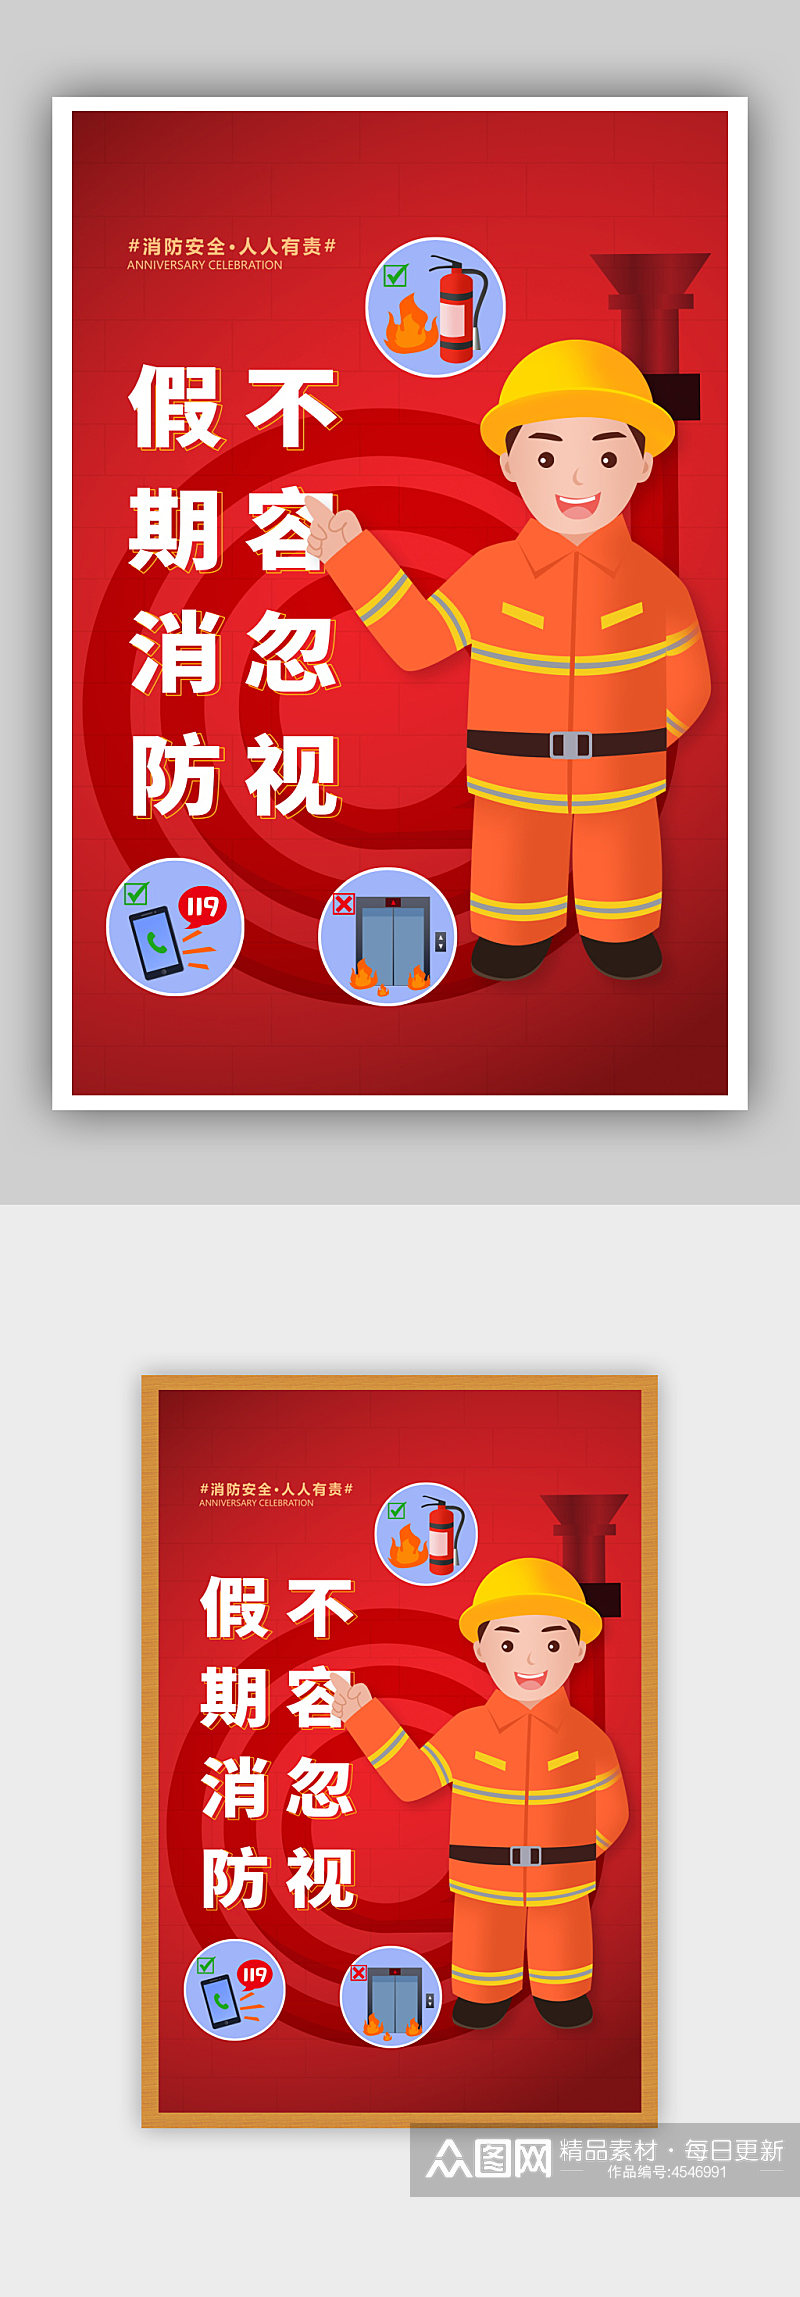 简约红色假期消防安全宣传海报素材